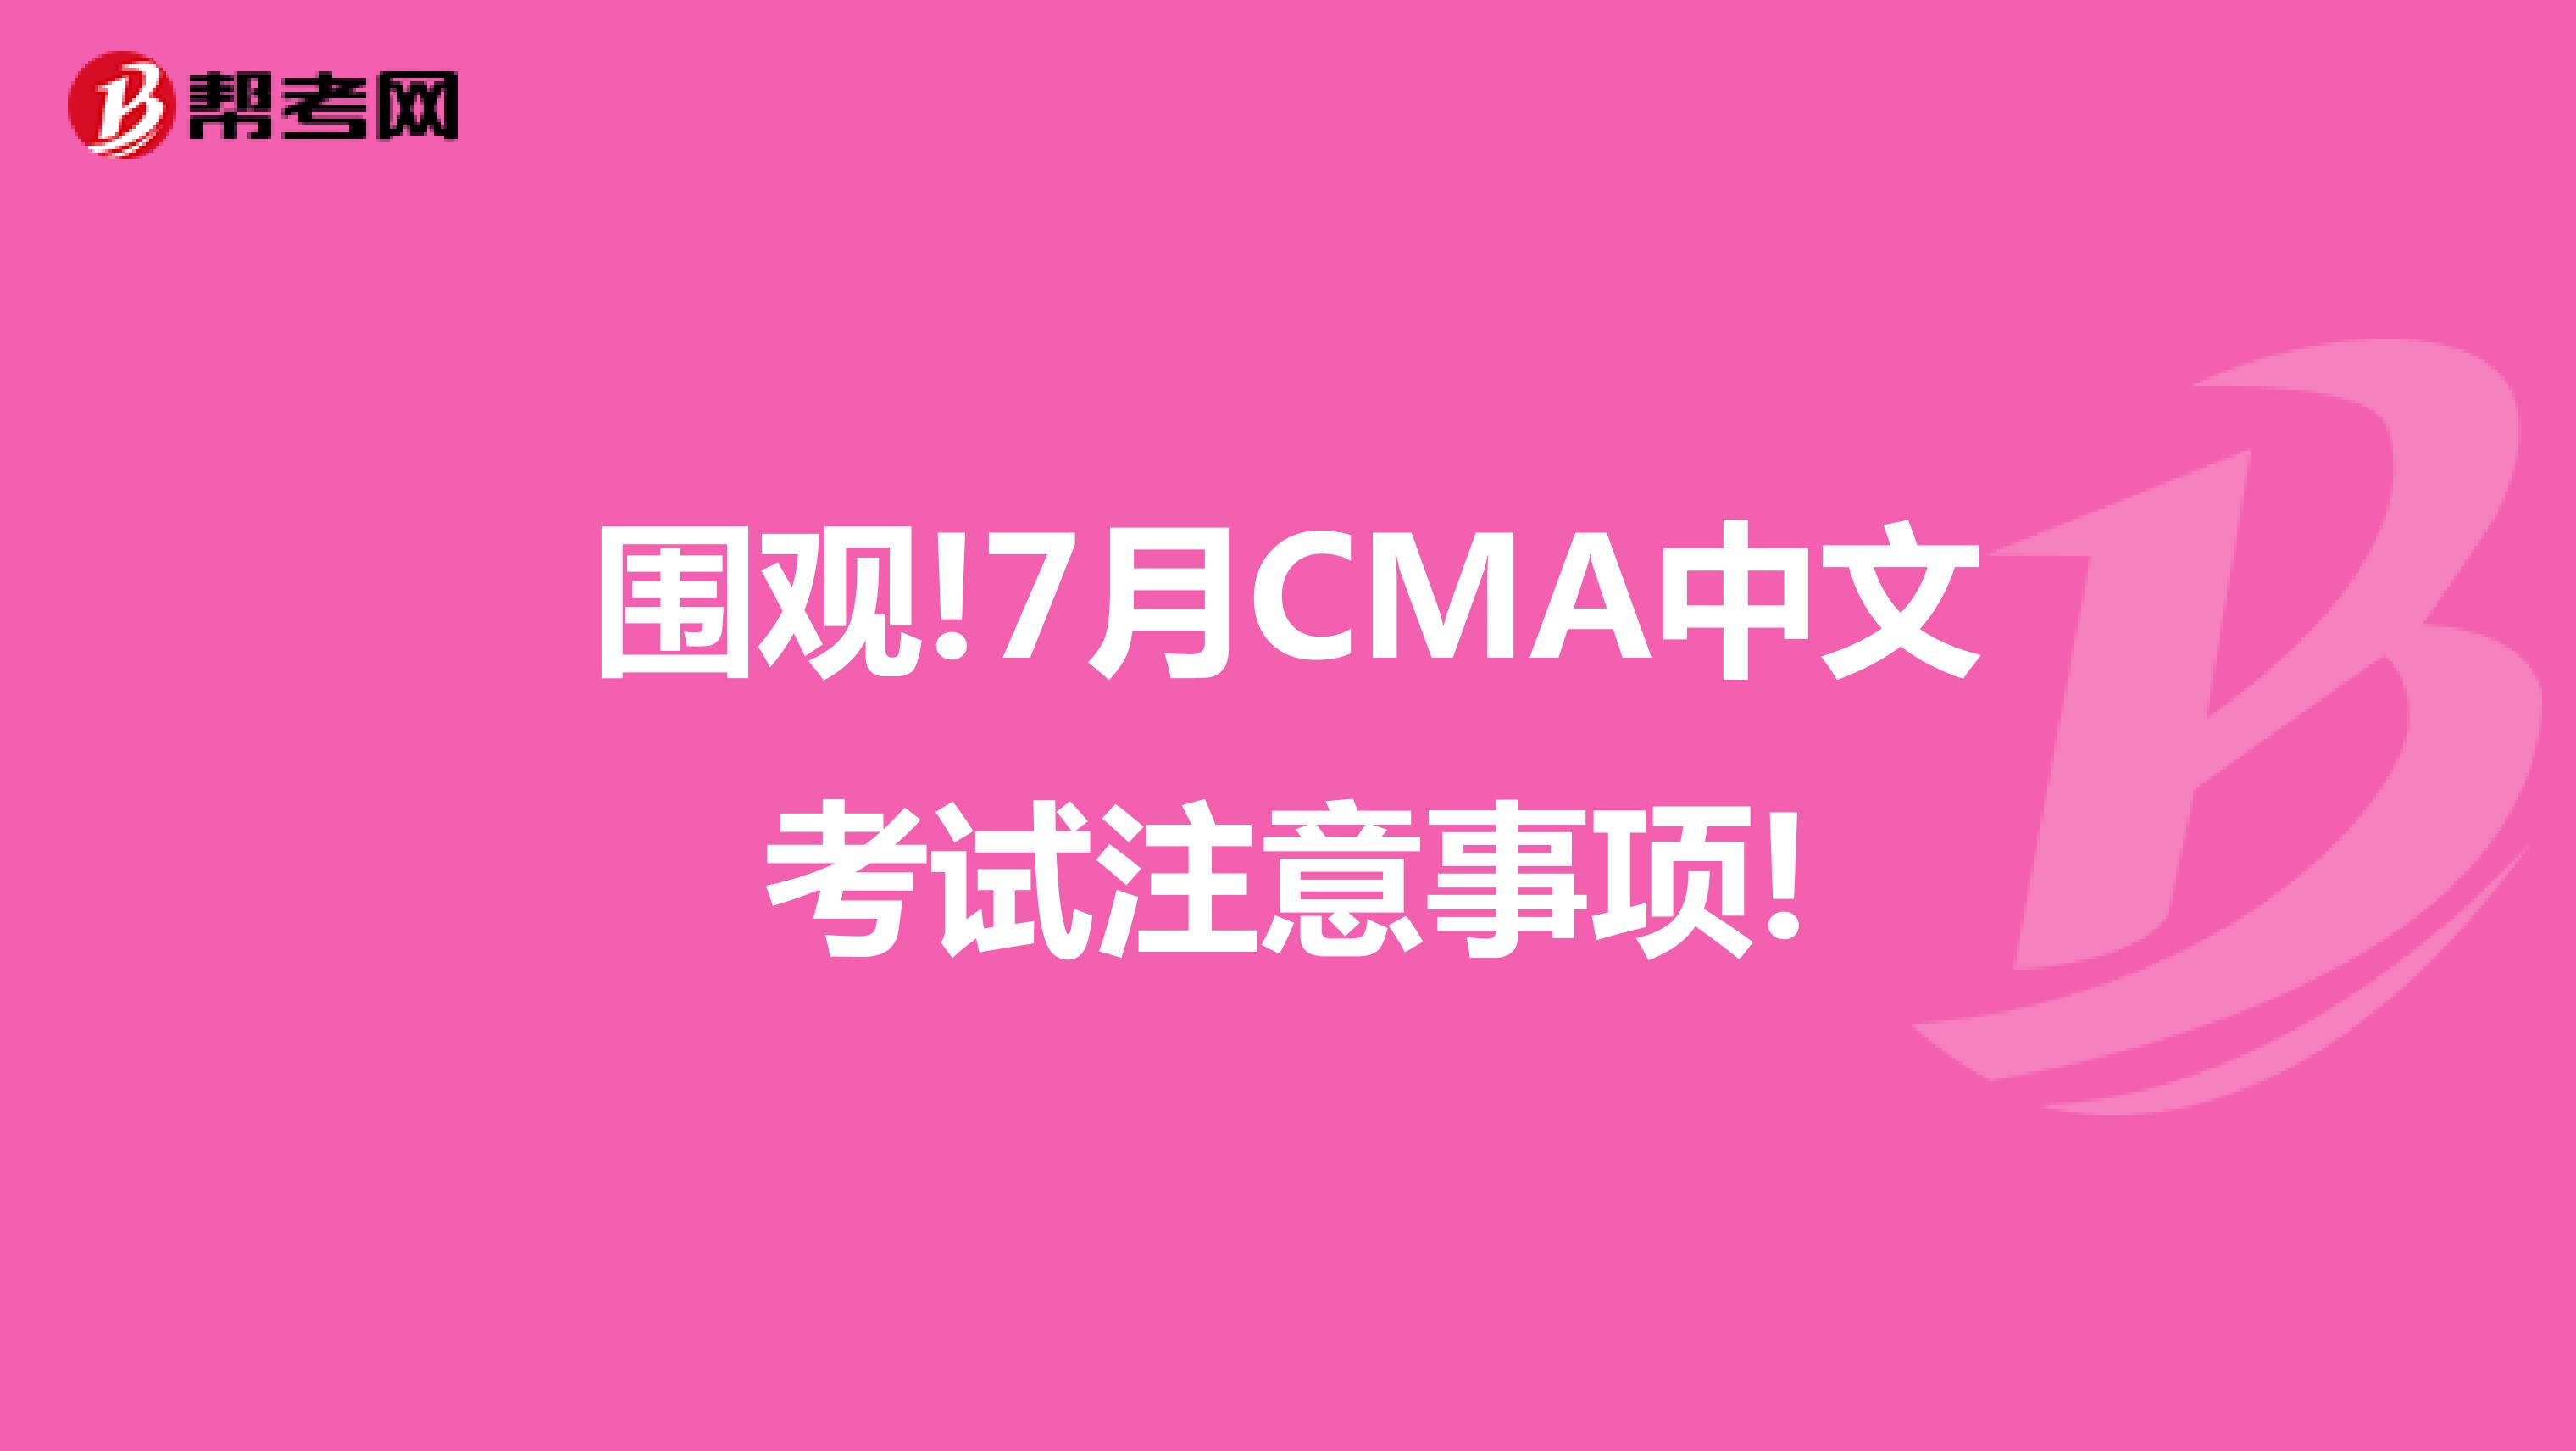 围观!7月CMA中文考试注意事项!